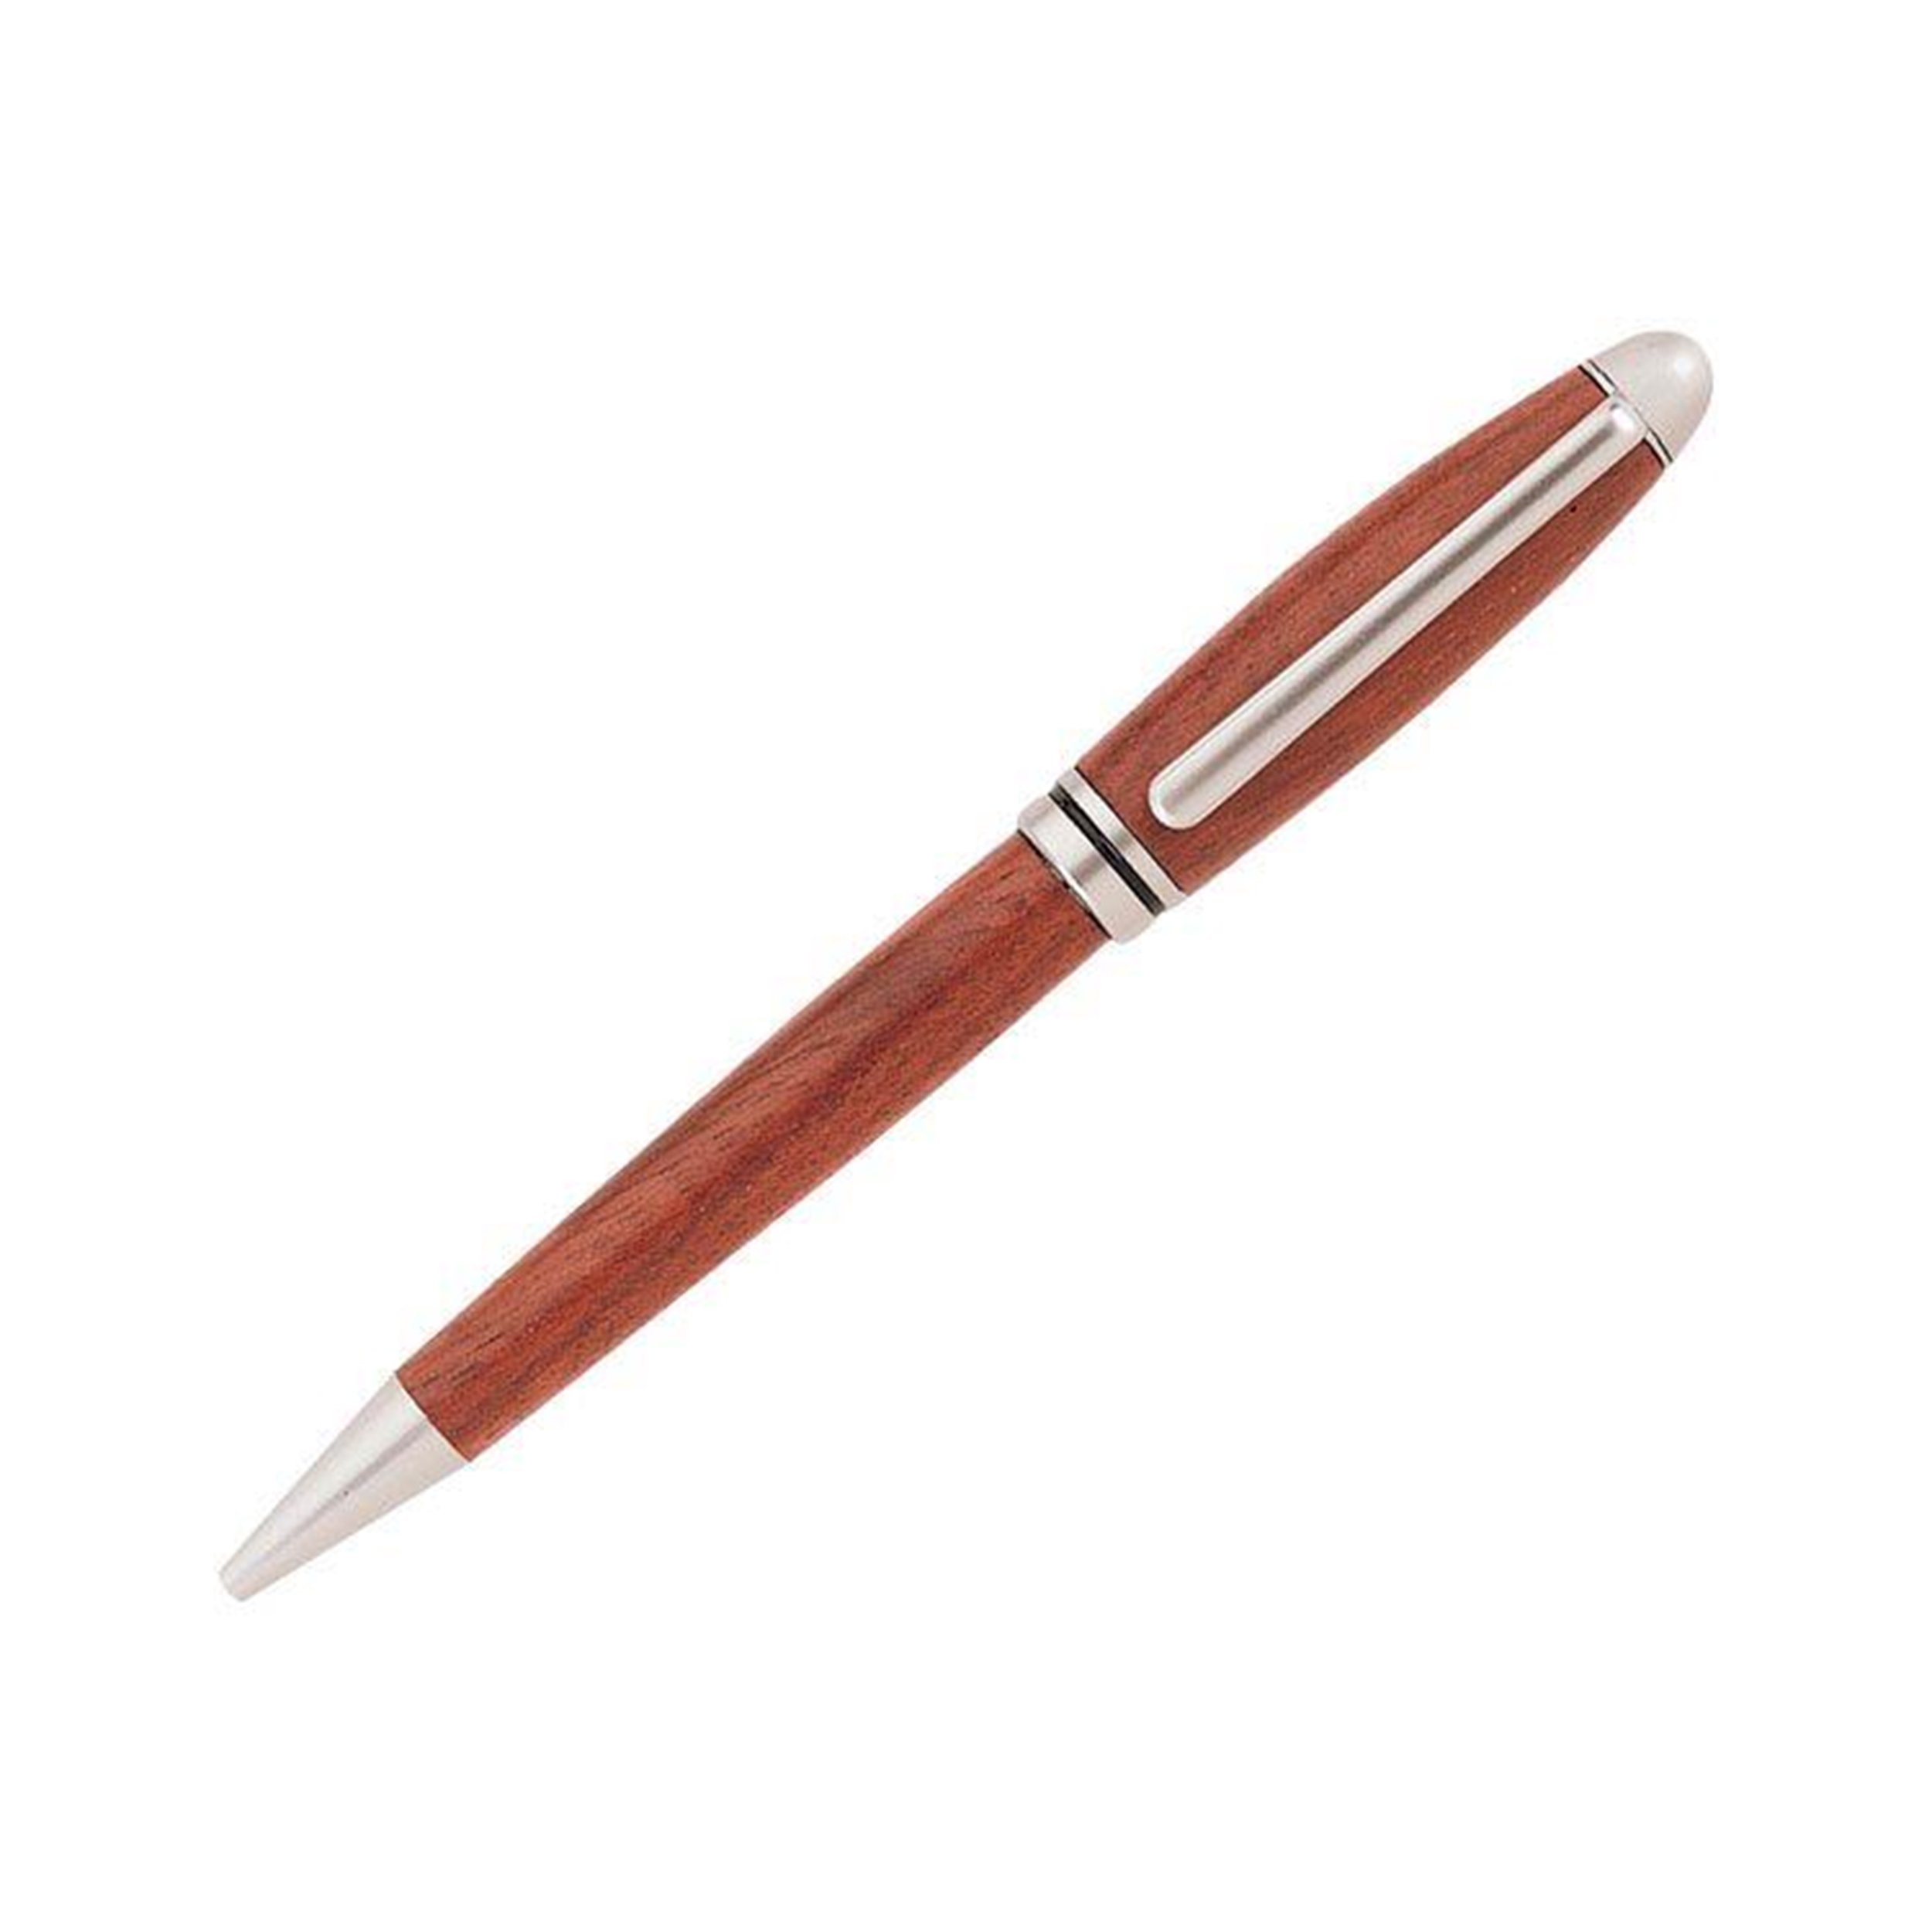 European Style Ballpoint Pen Kit - Satin Pearl